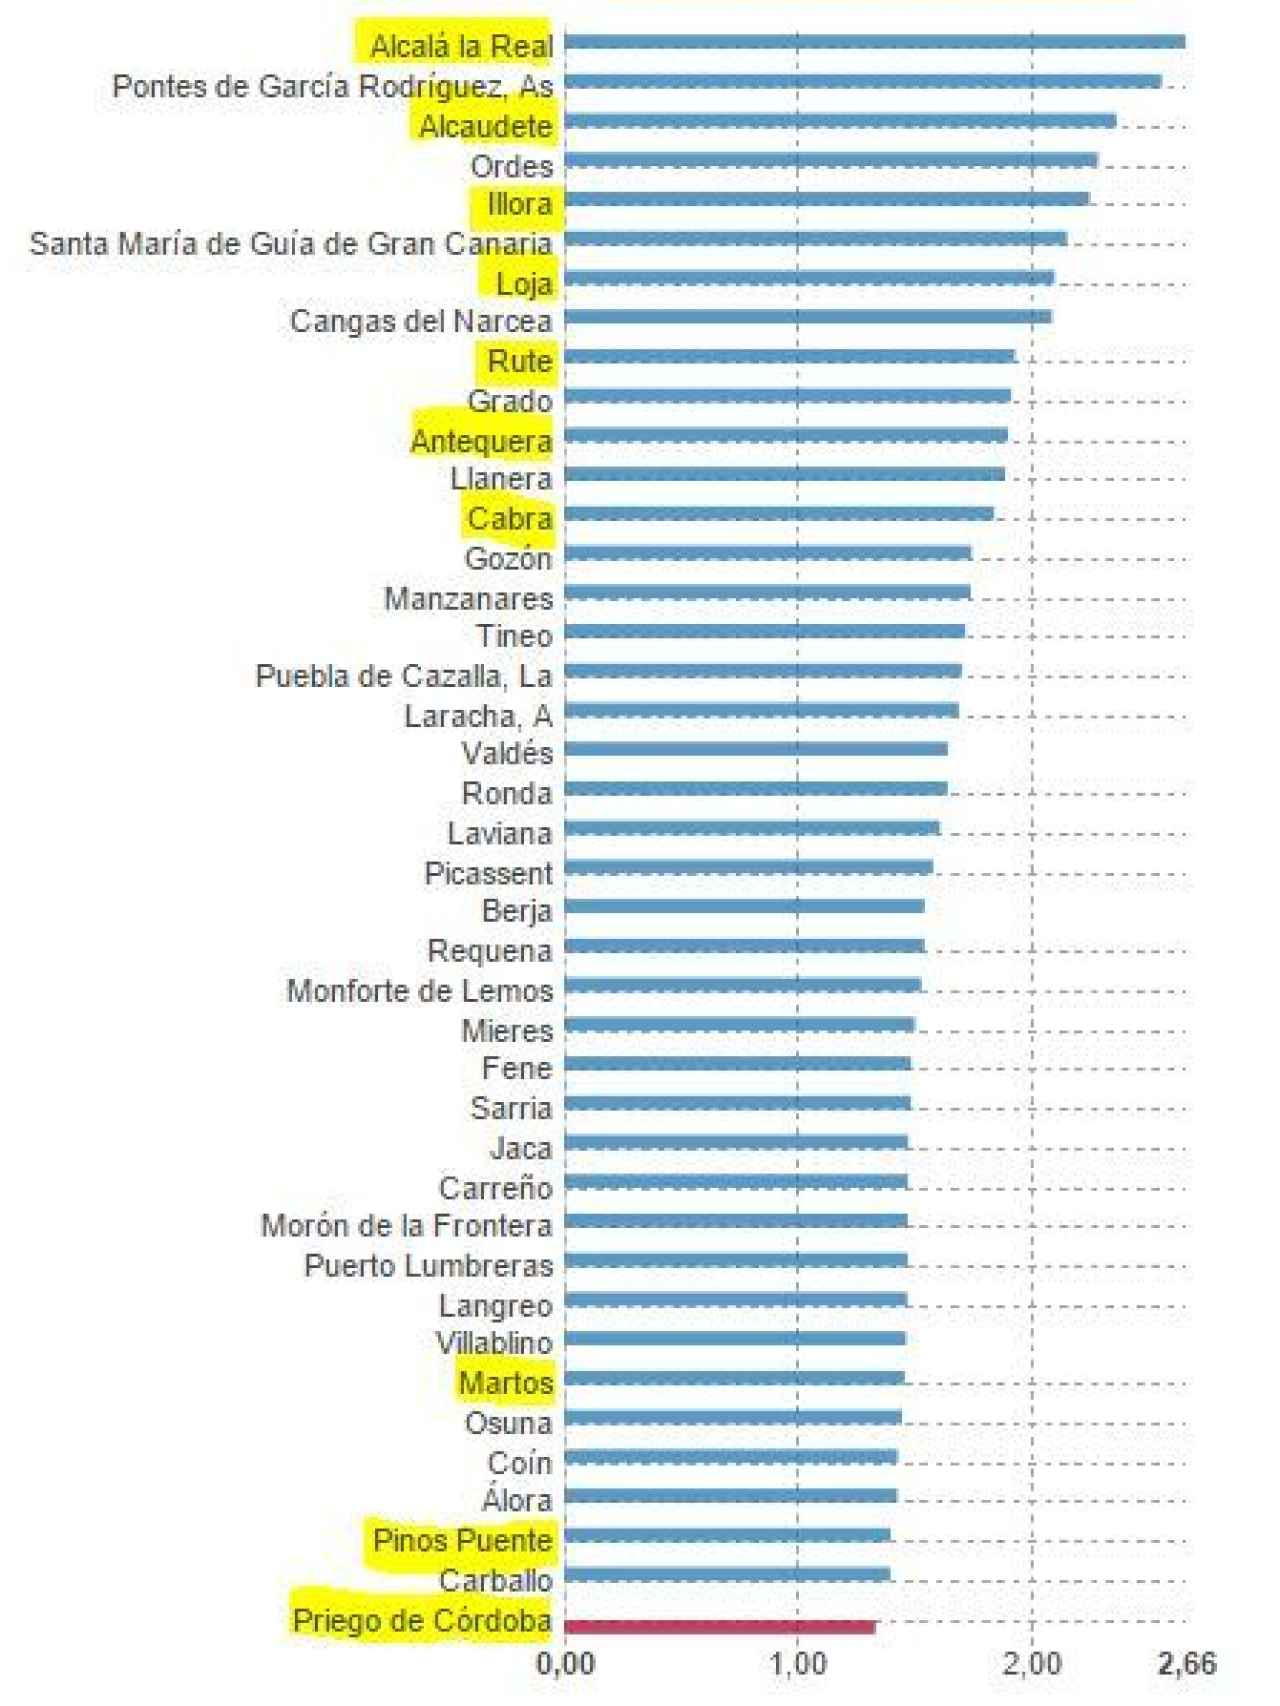 Datos de los municipios con la tasa de suicidios más altas de España. Cifras por cada 10.000 habitantes.